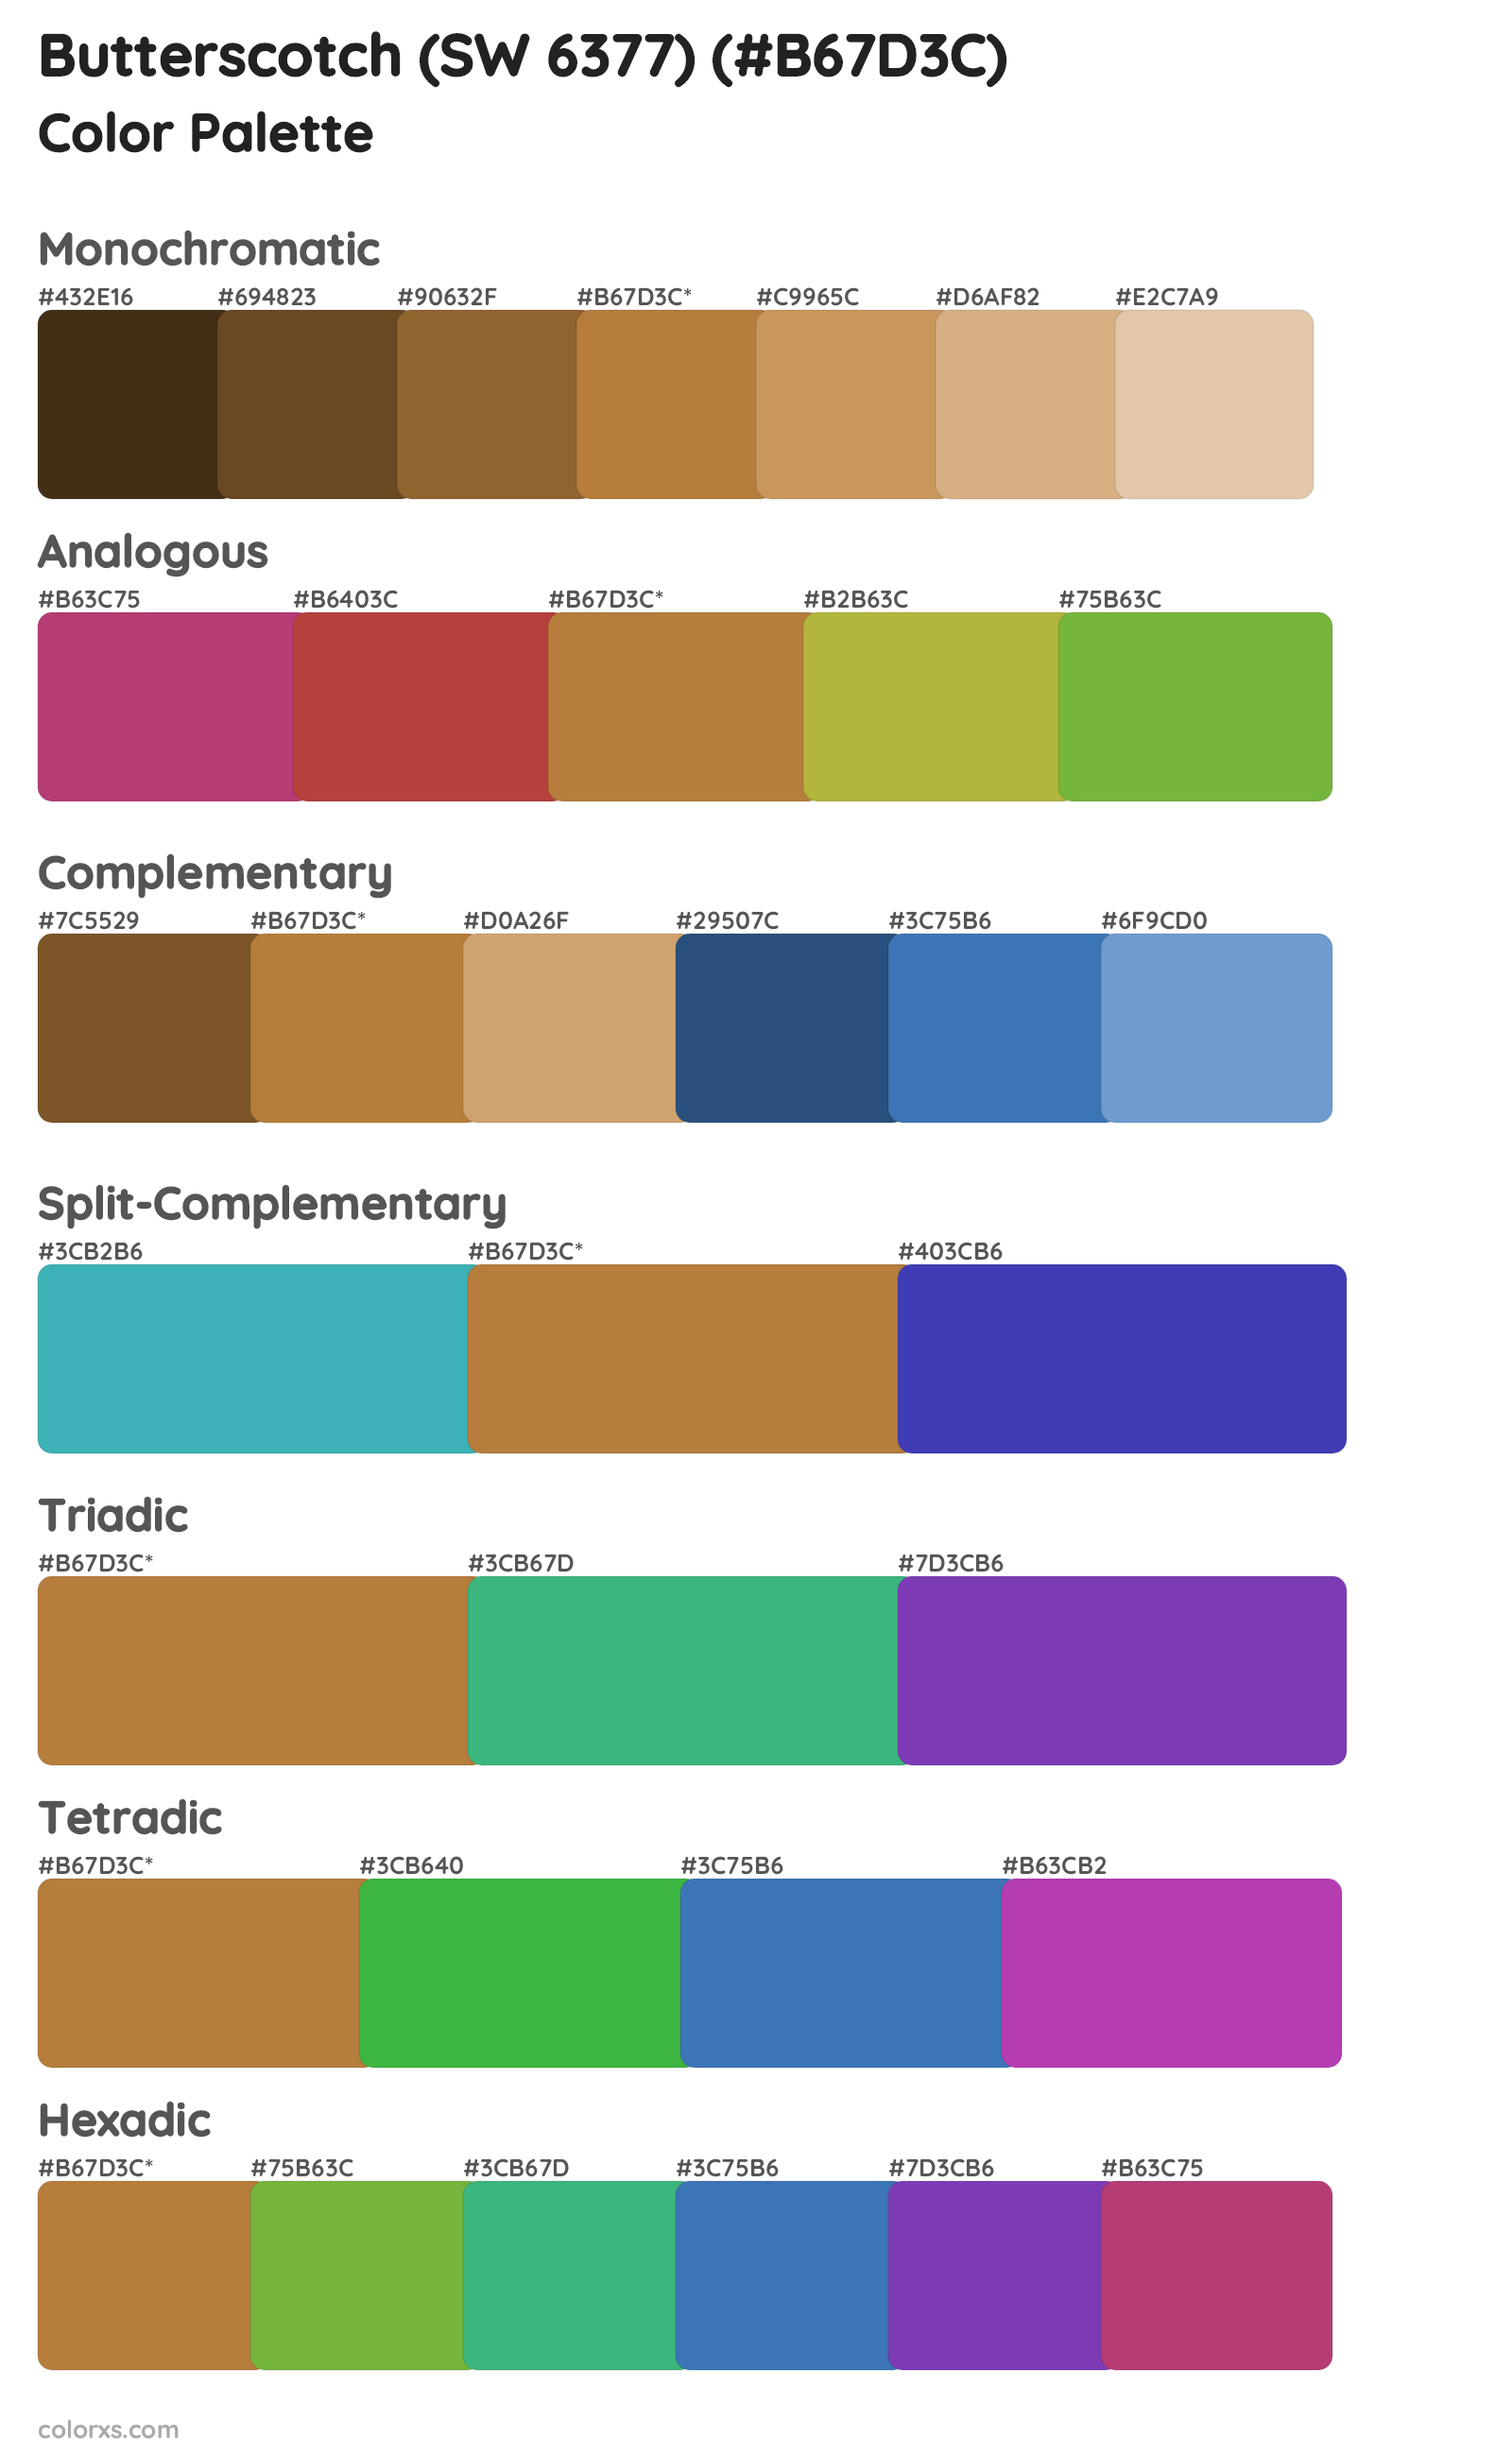 Butterscotch (SW 6377) Color Scheme Palettes